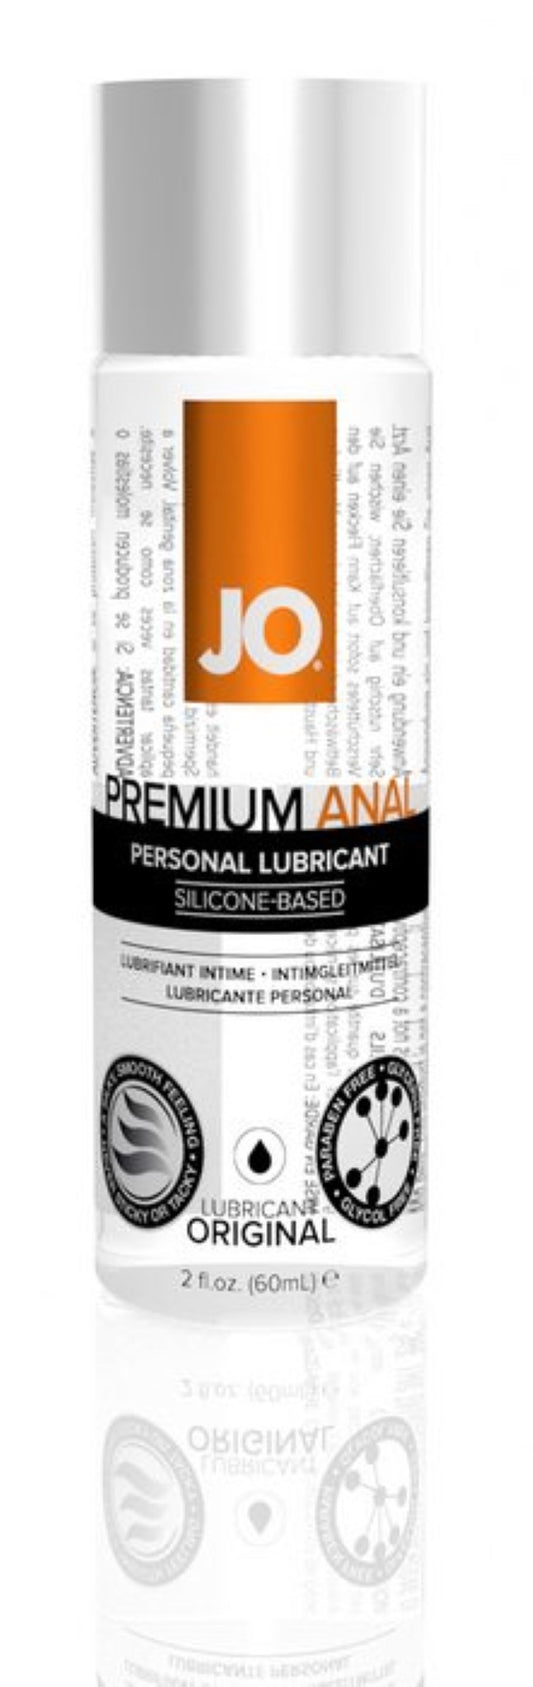 jo-anal-premium-silicone-lubricant